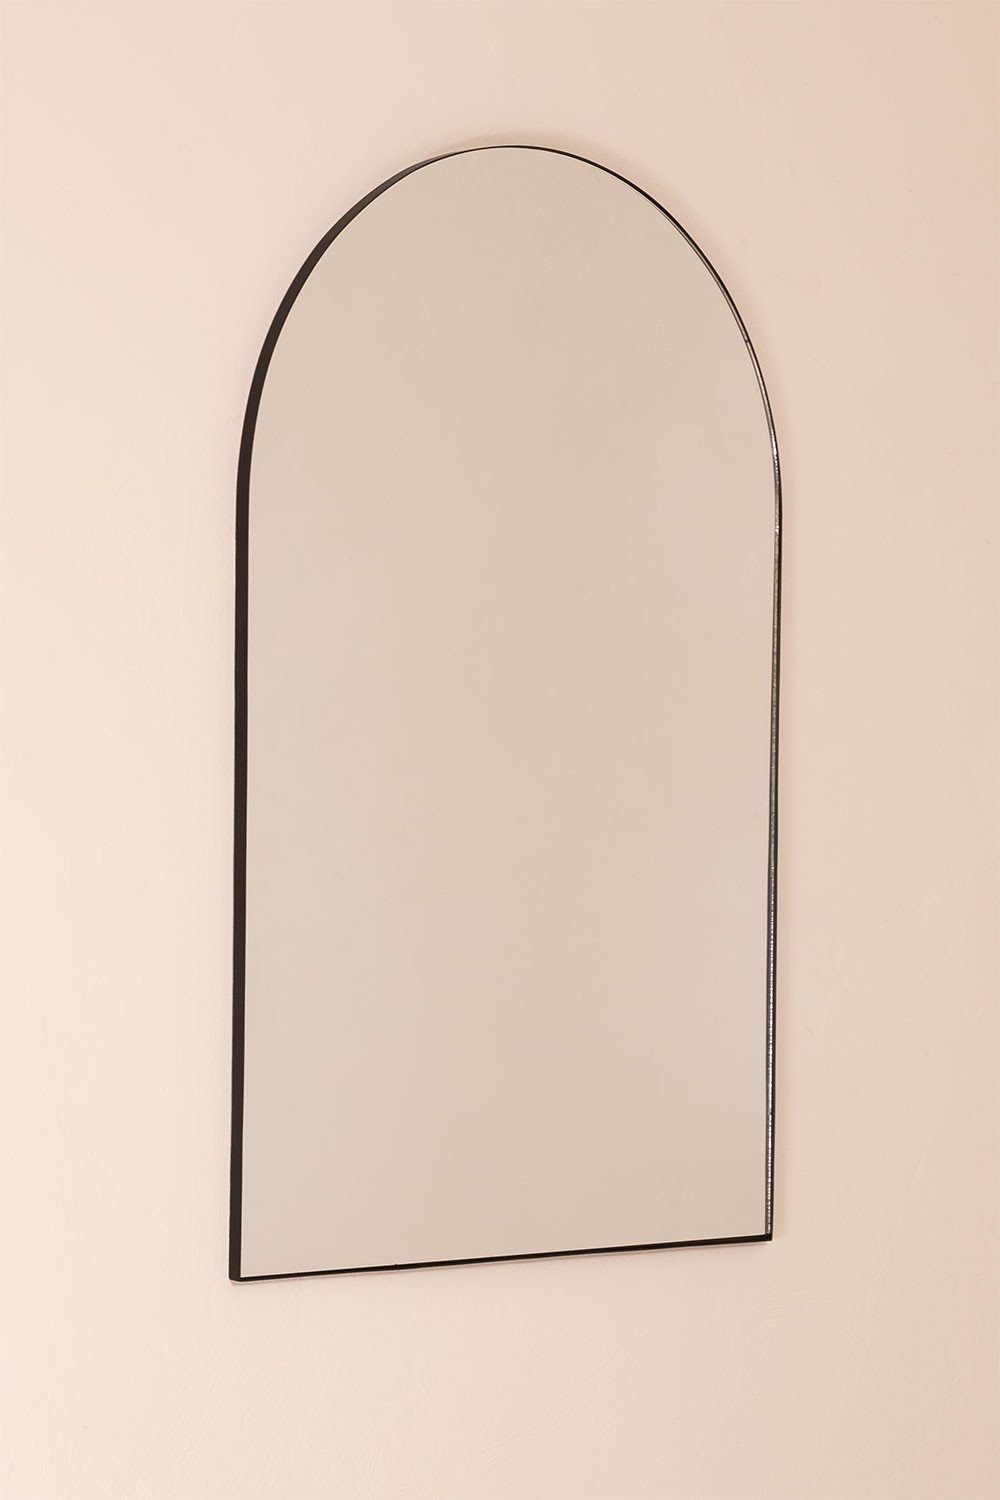 Miroir en métal (120x77 cm) Ingrid, image de la galerie 2